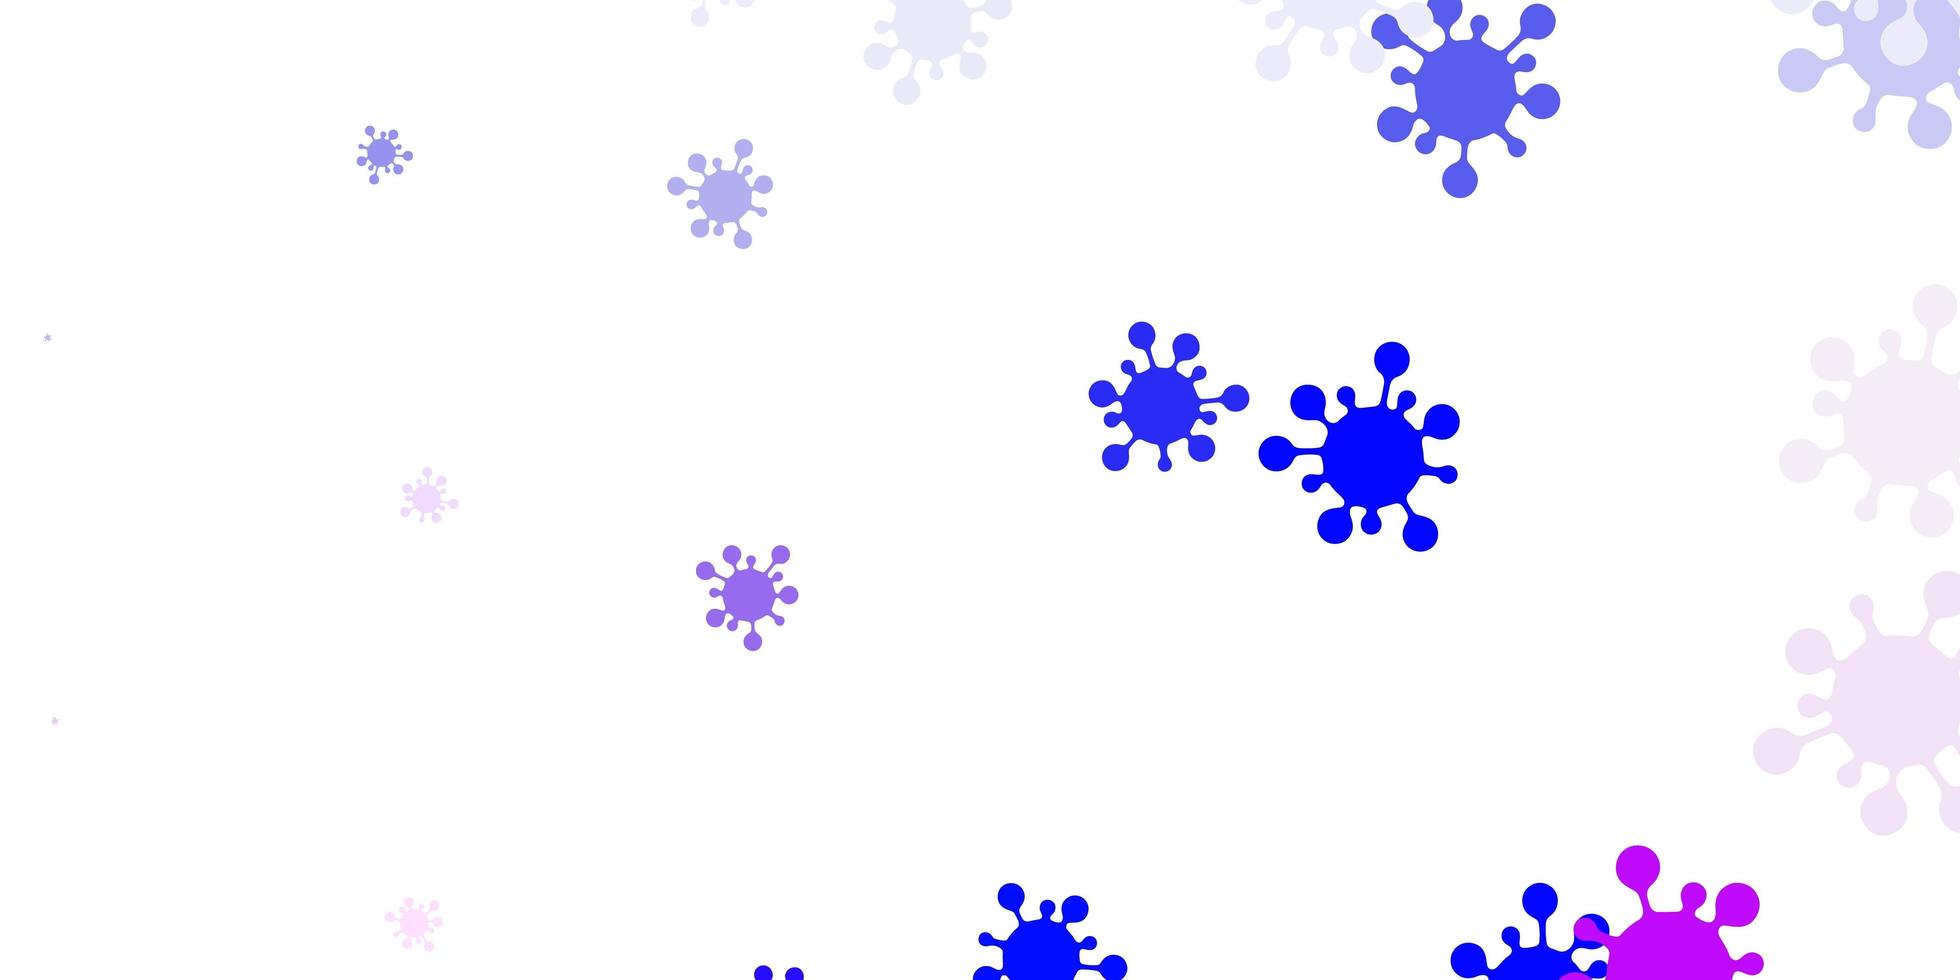 ljusrosa, blå vektorstruktur med sjukdomssymboler vektor